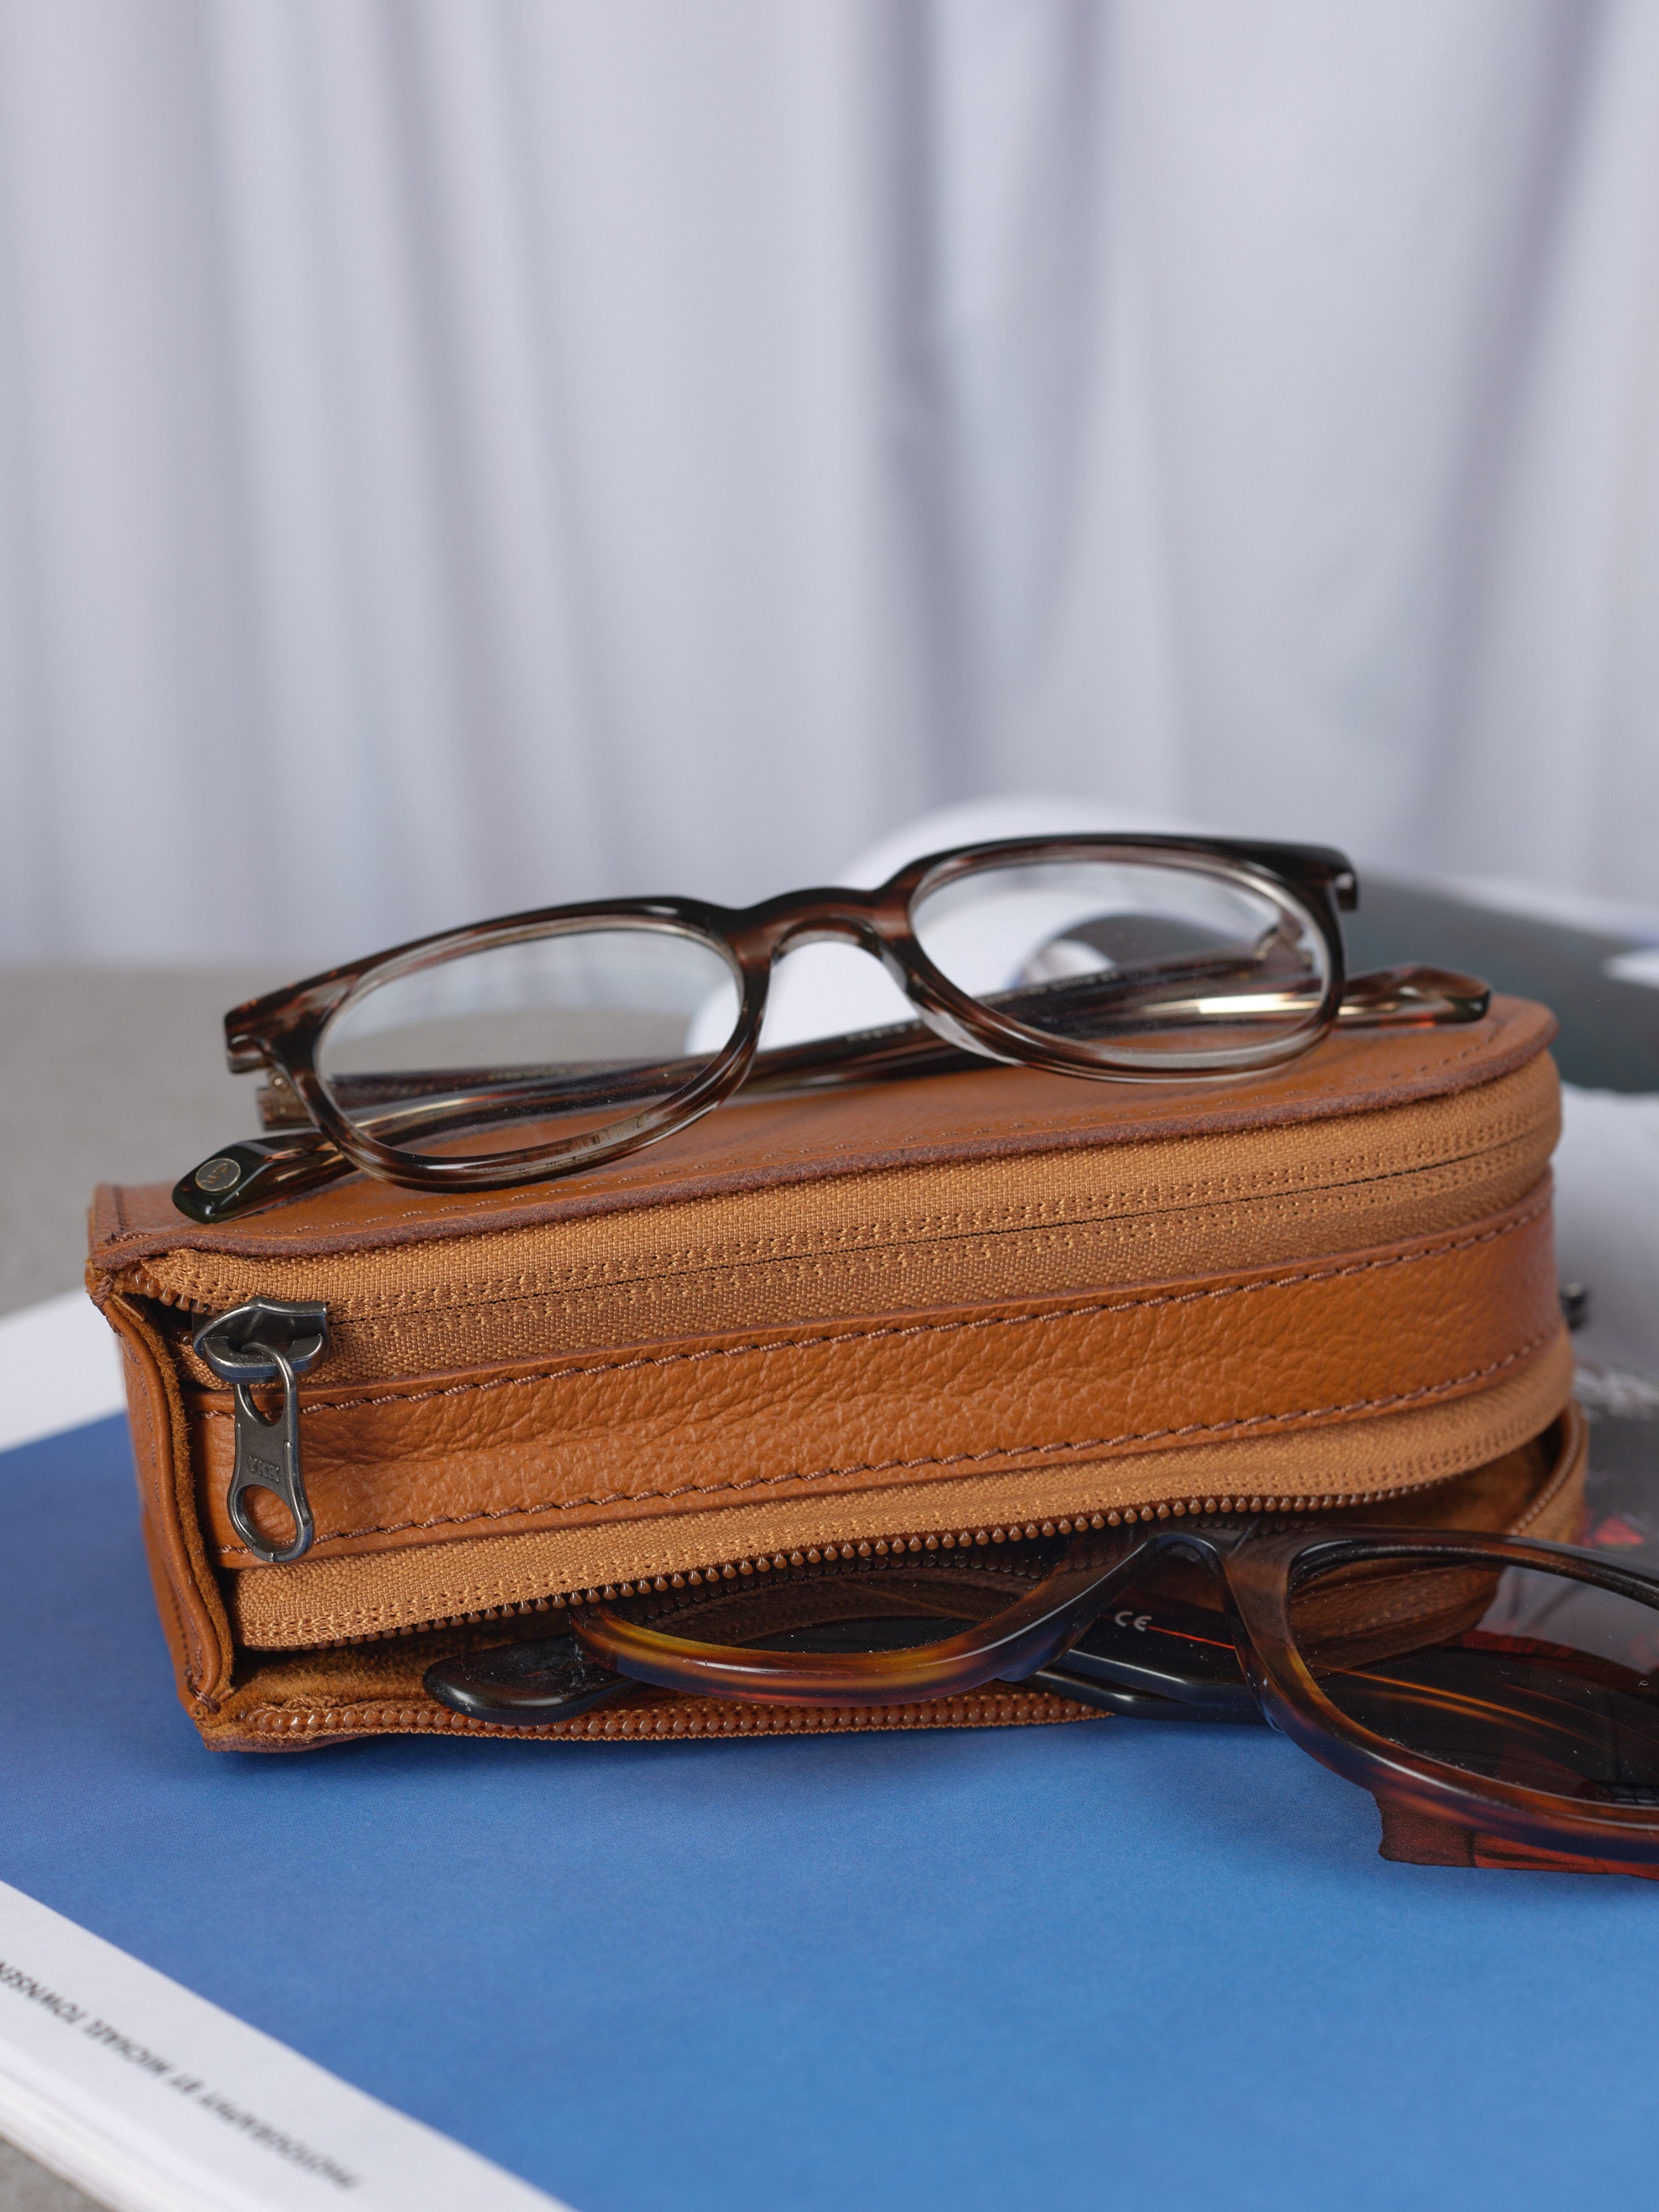 Leather Sunglasses Case, glasses case, vintage sunglass case